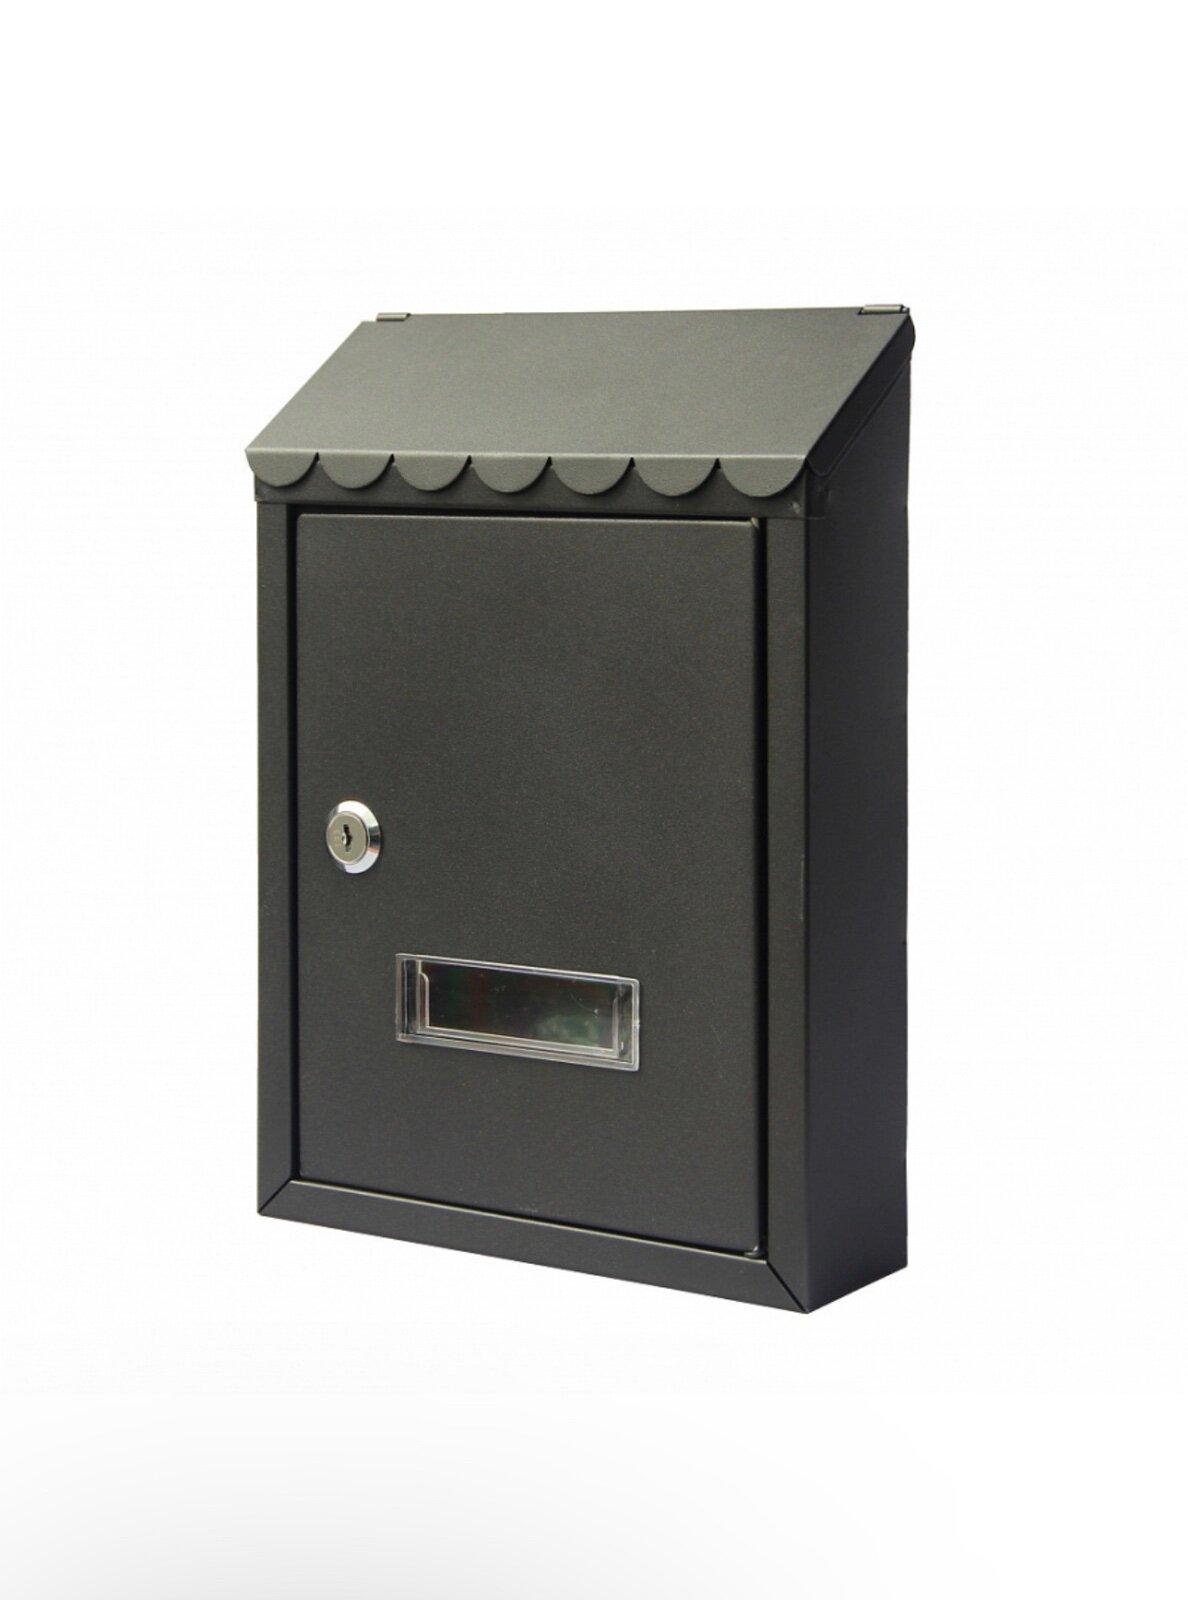 Почтовый ящик MASTER LOCK K-38013 цвет: черный / почтовый ящик металлический/ почтовый ящик с замком/ ящик почтовый/ почтовый ящик с замком уличный - фотография № 6